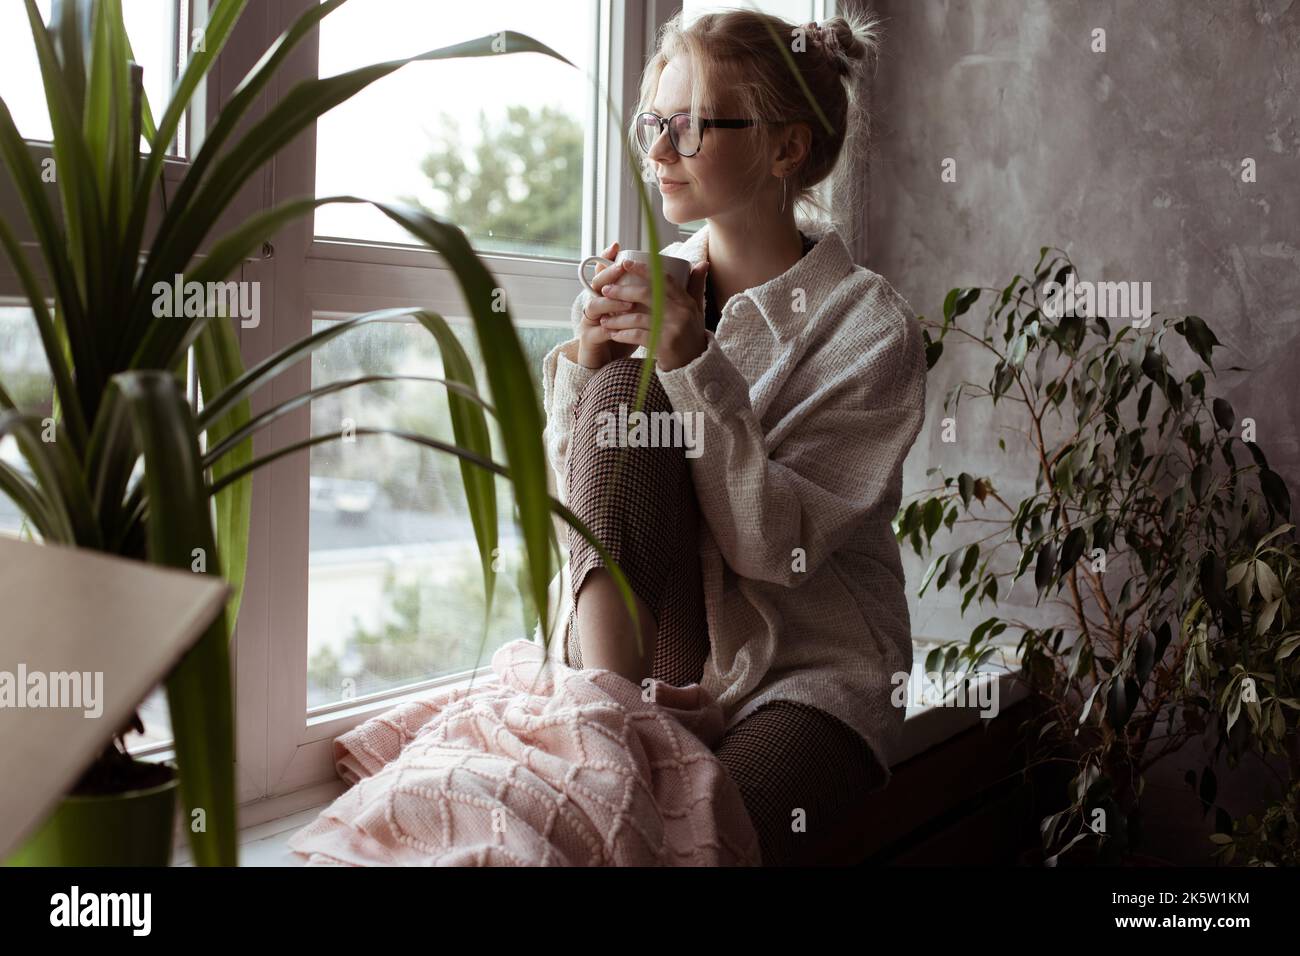 Eine glückselige, ruhige, nachdenkliche junge blonde Frau mit Brille blickt mit heißem Tee aus dem Fenster. Umzug, neues Leben und Umzug Stockfoto